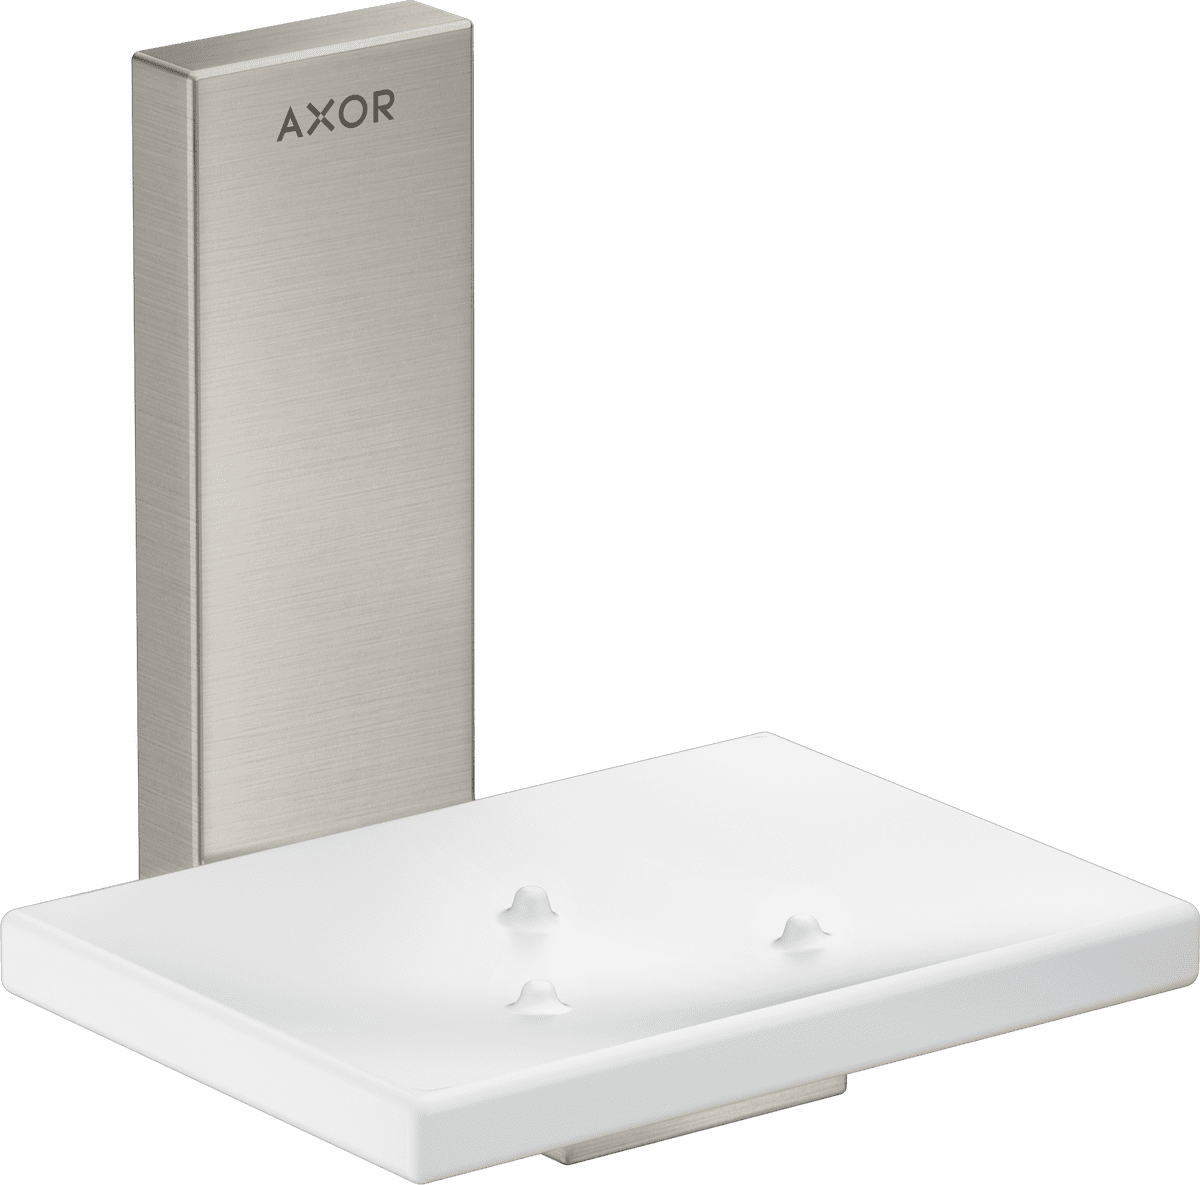 εικόνα του HANSGROHE AXOR Universal Rectangular Soap dish #42605800 - Stainless Steel Optic